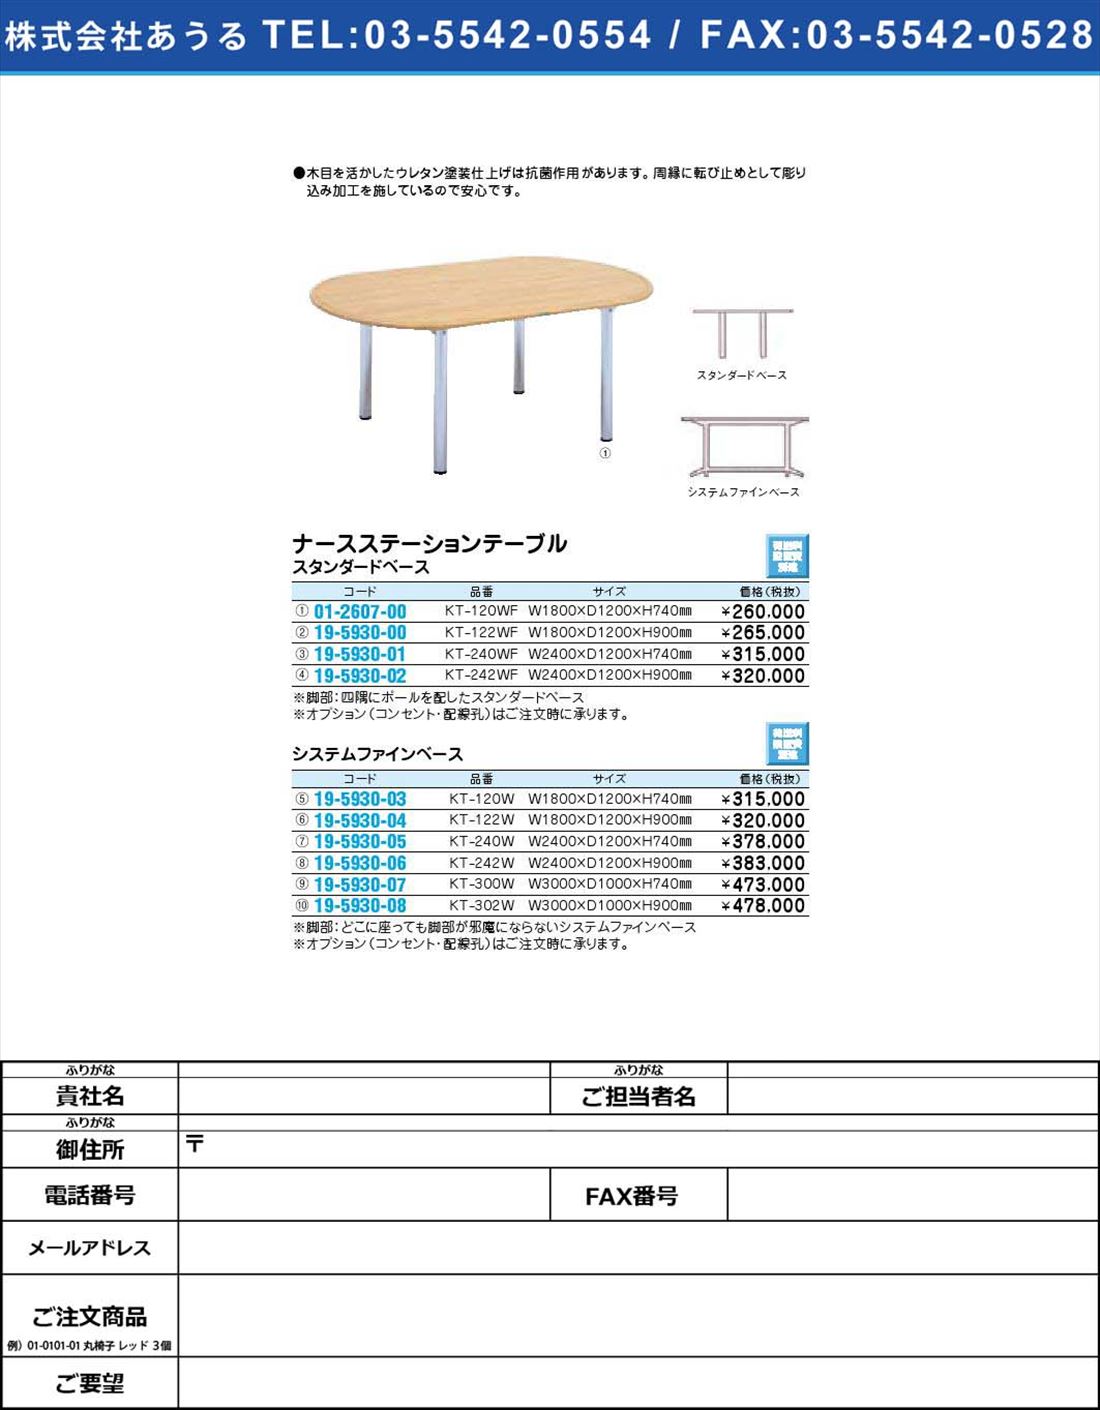 ナースステーションテーブル システムファインベースKT-300W(19-5930-07)【1個単位】